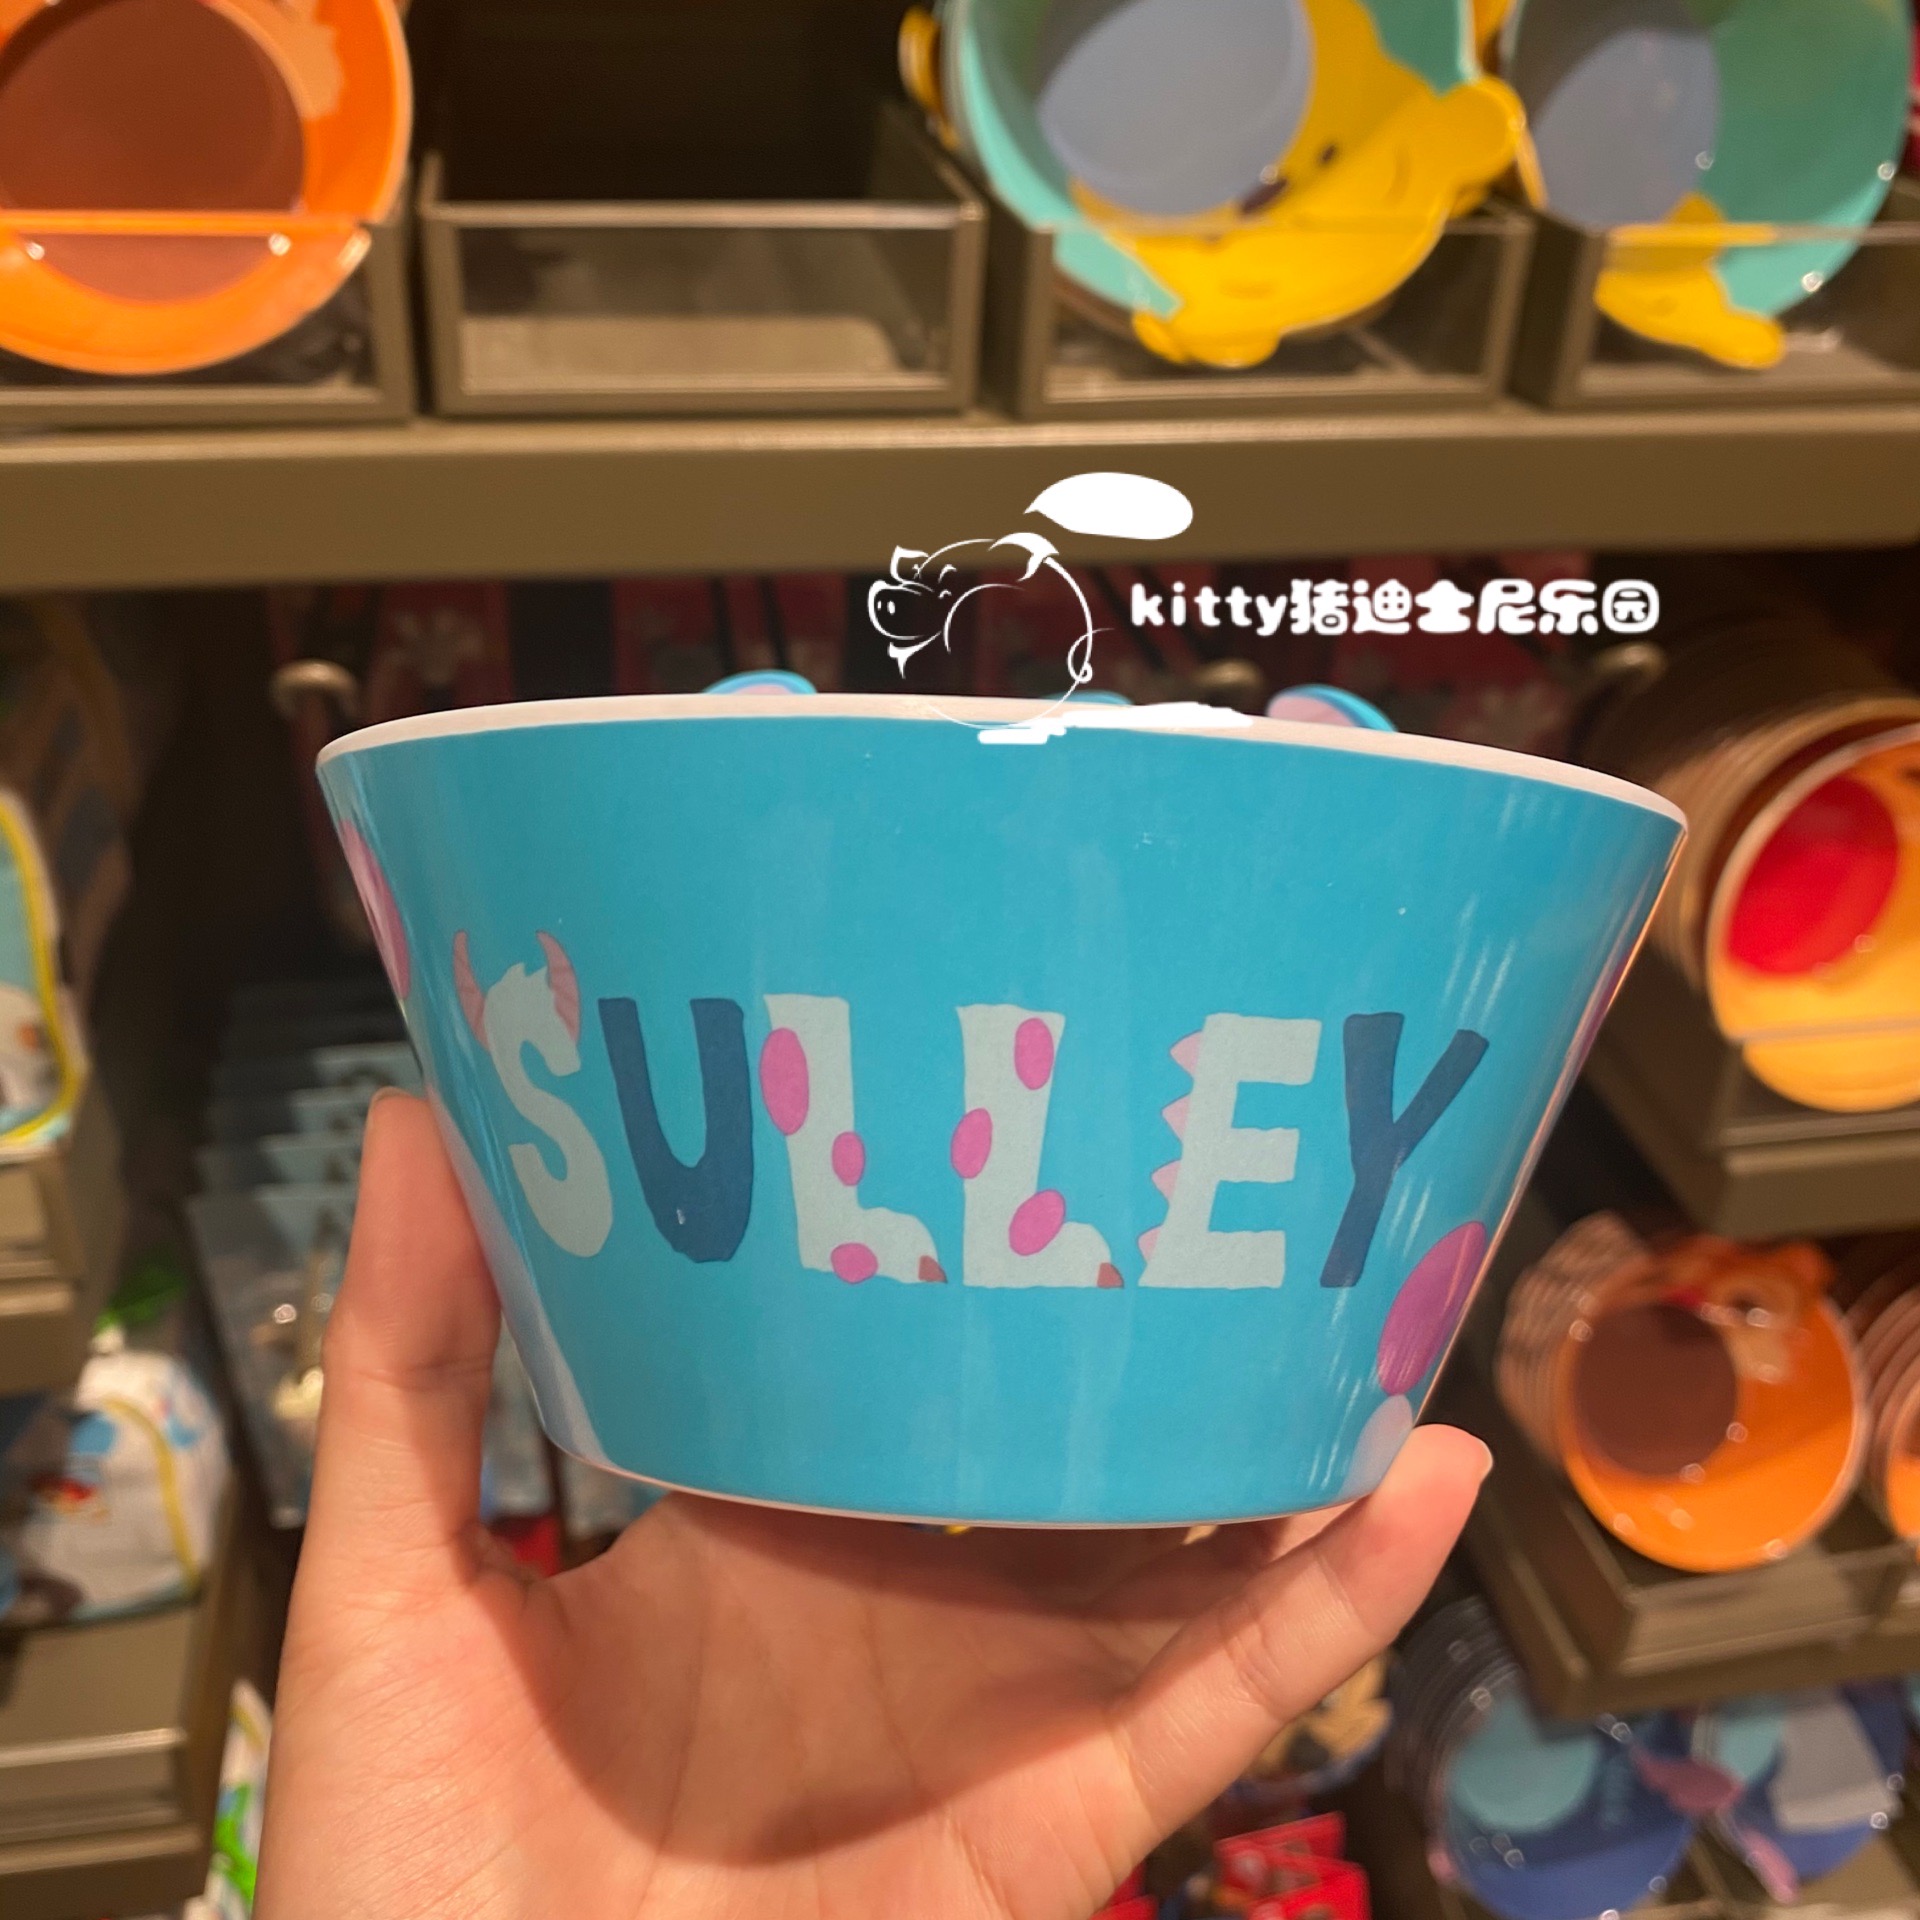 Chén ăn nhựa Melamine hình Sulley Monsters University 3D màu xanh dương cho bé trai - 78VNDM2488X